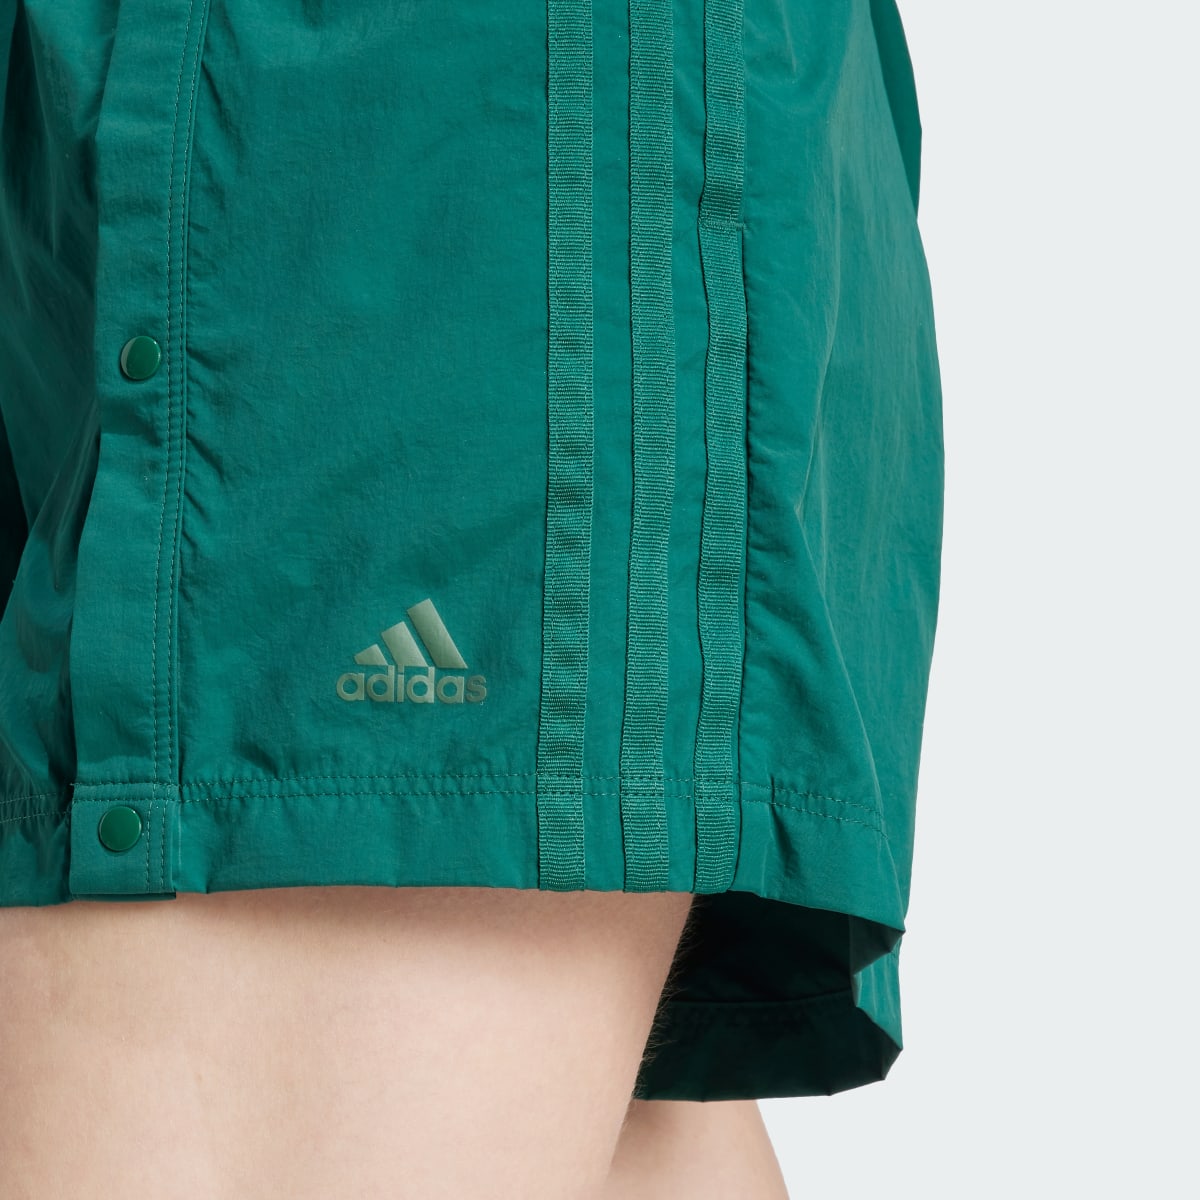 Adidas Tiro Snap-Button Shorts. 6